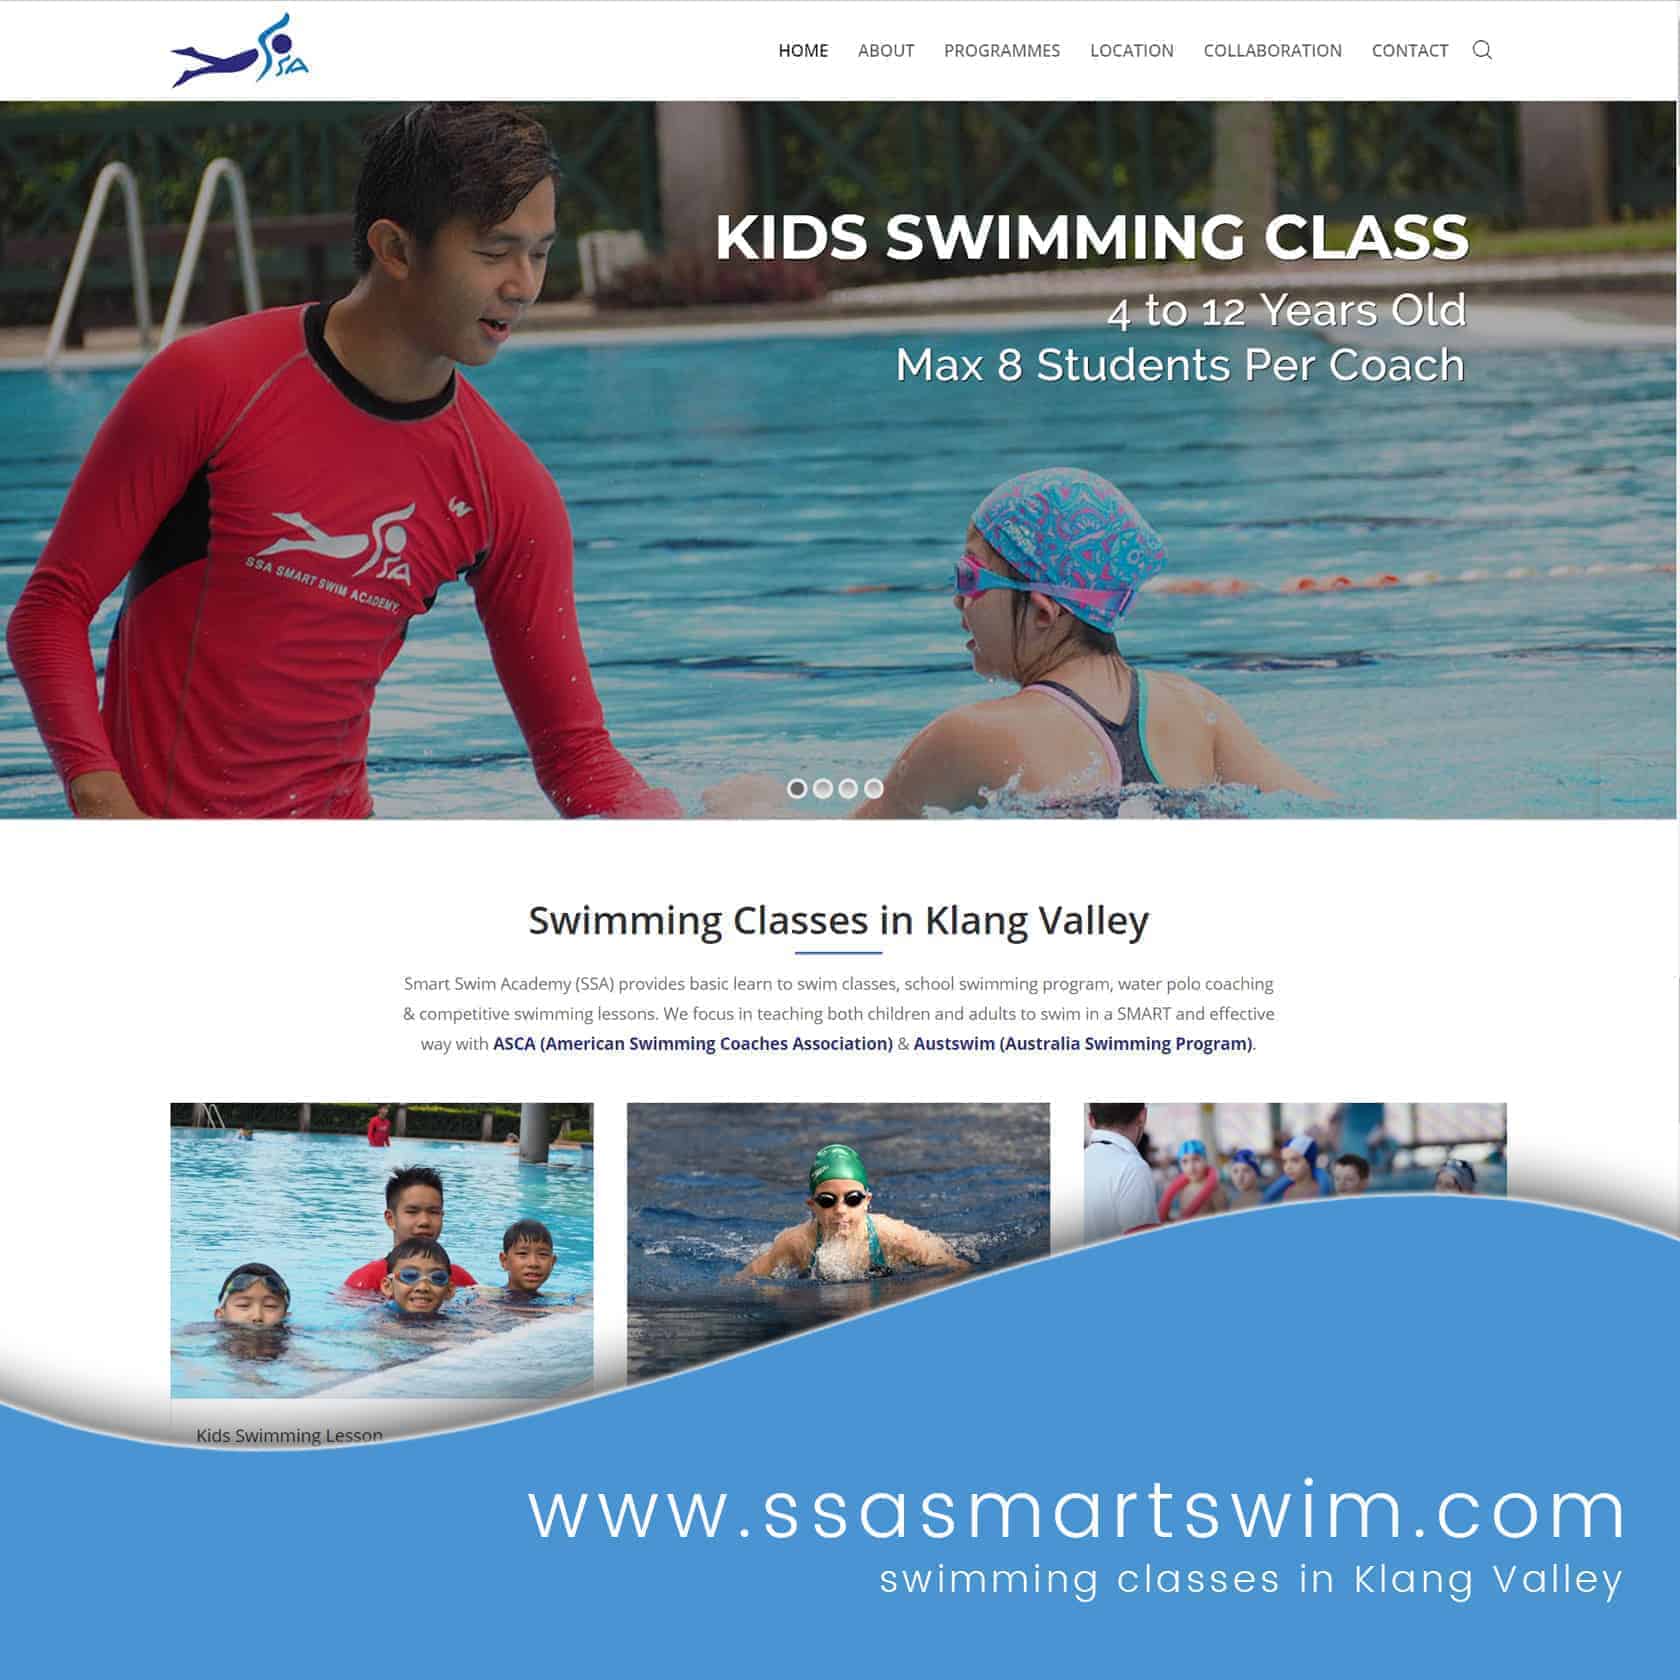 ssa smart swim website